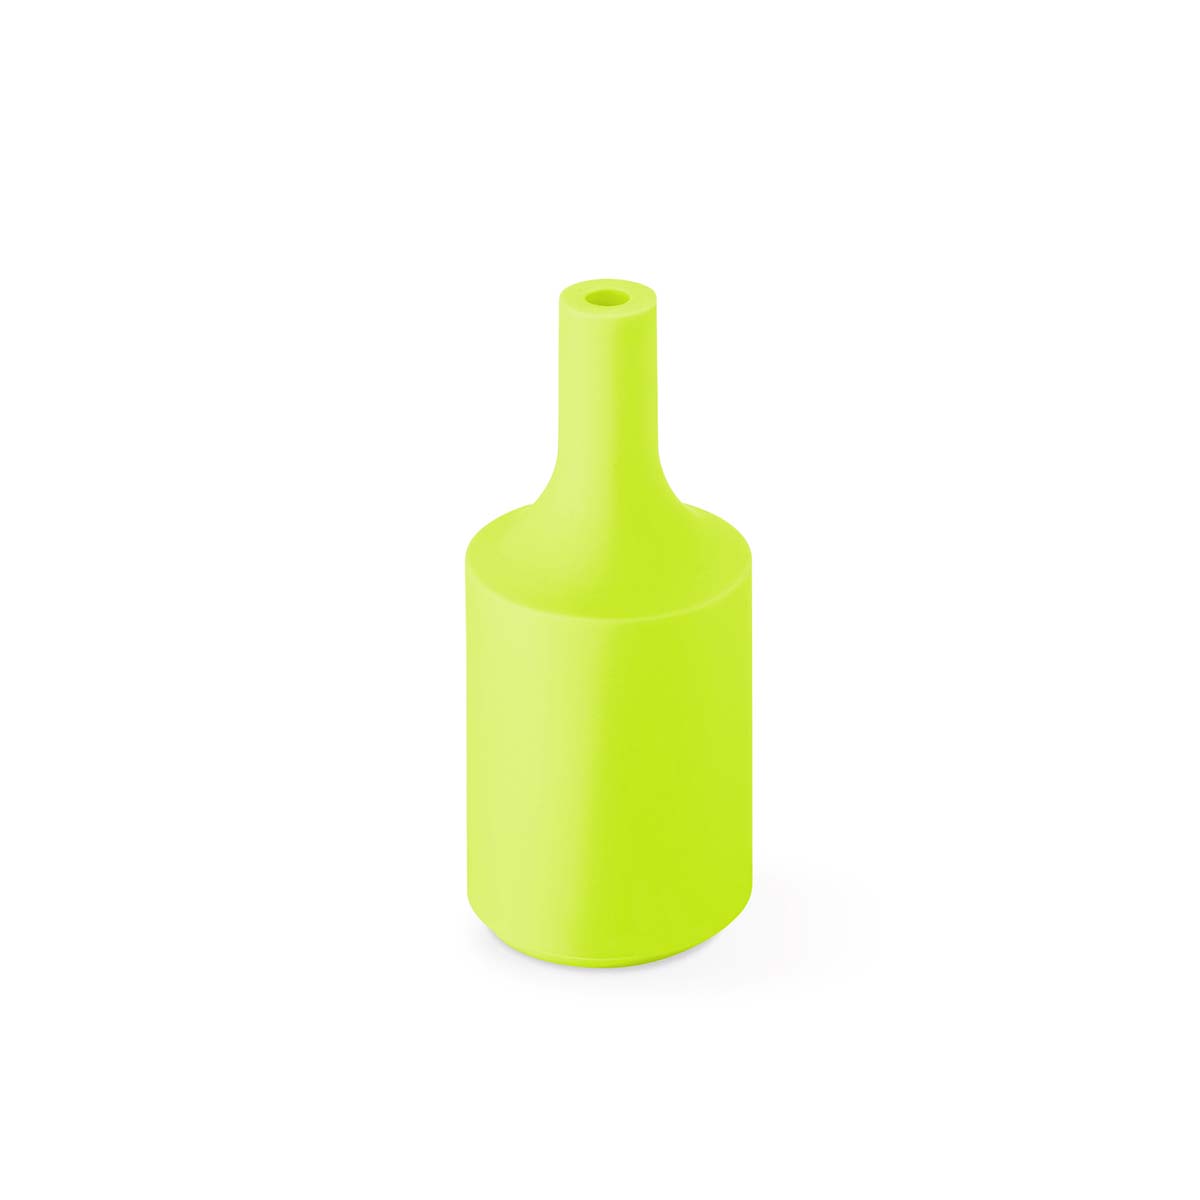 Tangla lighting - TLLH024FG - lampholder silicon - E27 - bottle - fruit green